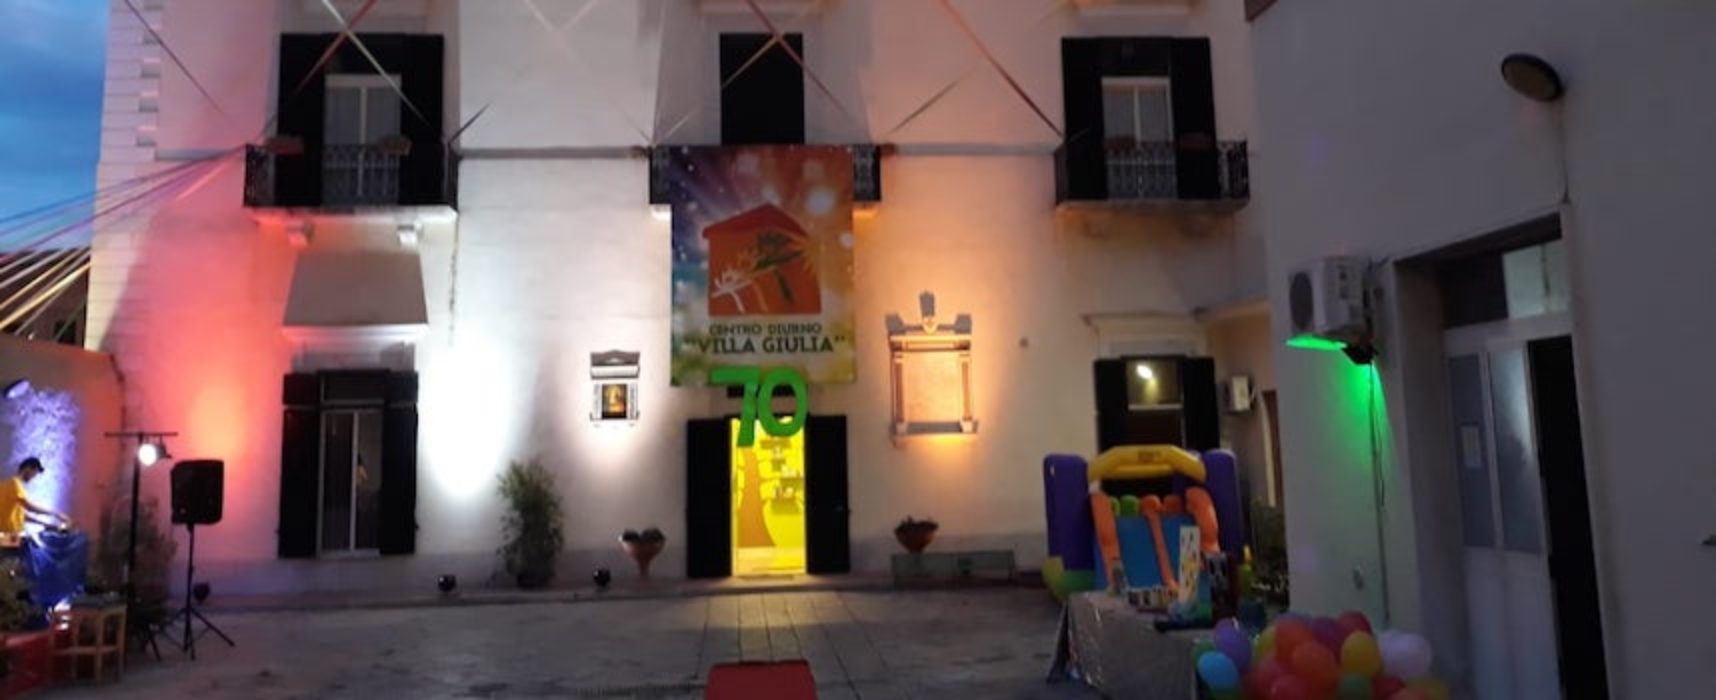 Villa Giulia, appello alla Regione: “Bambini costretti a casa per mancanza di fondi”